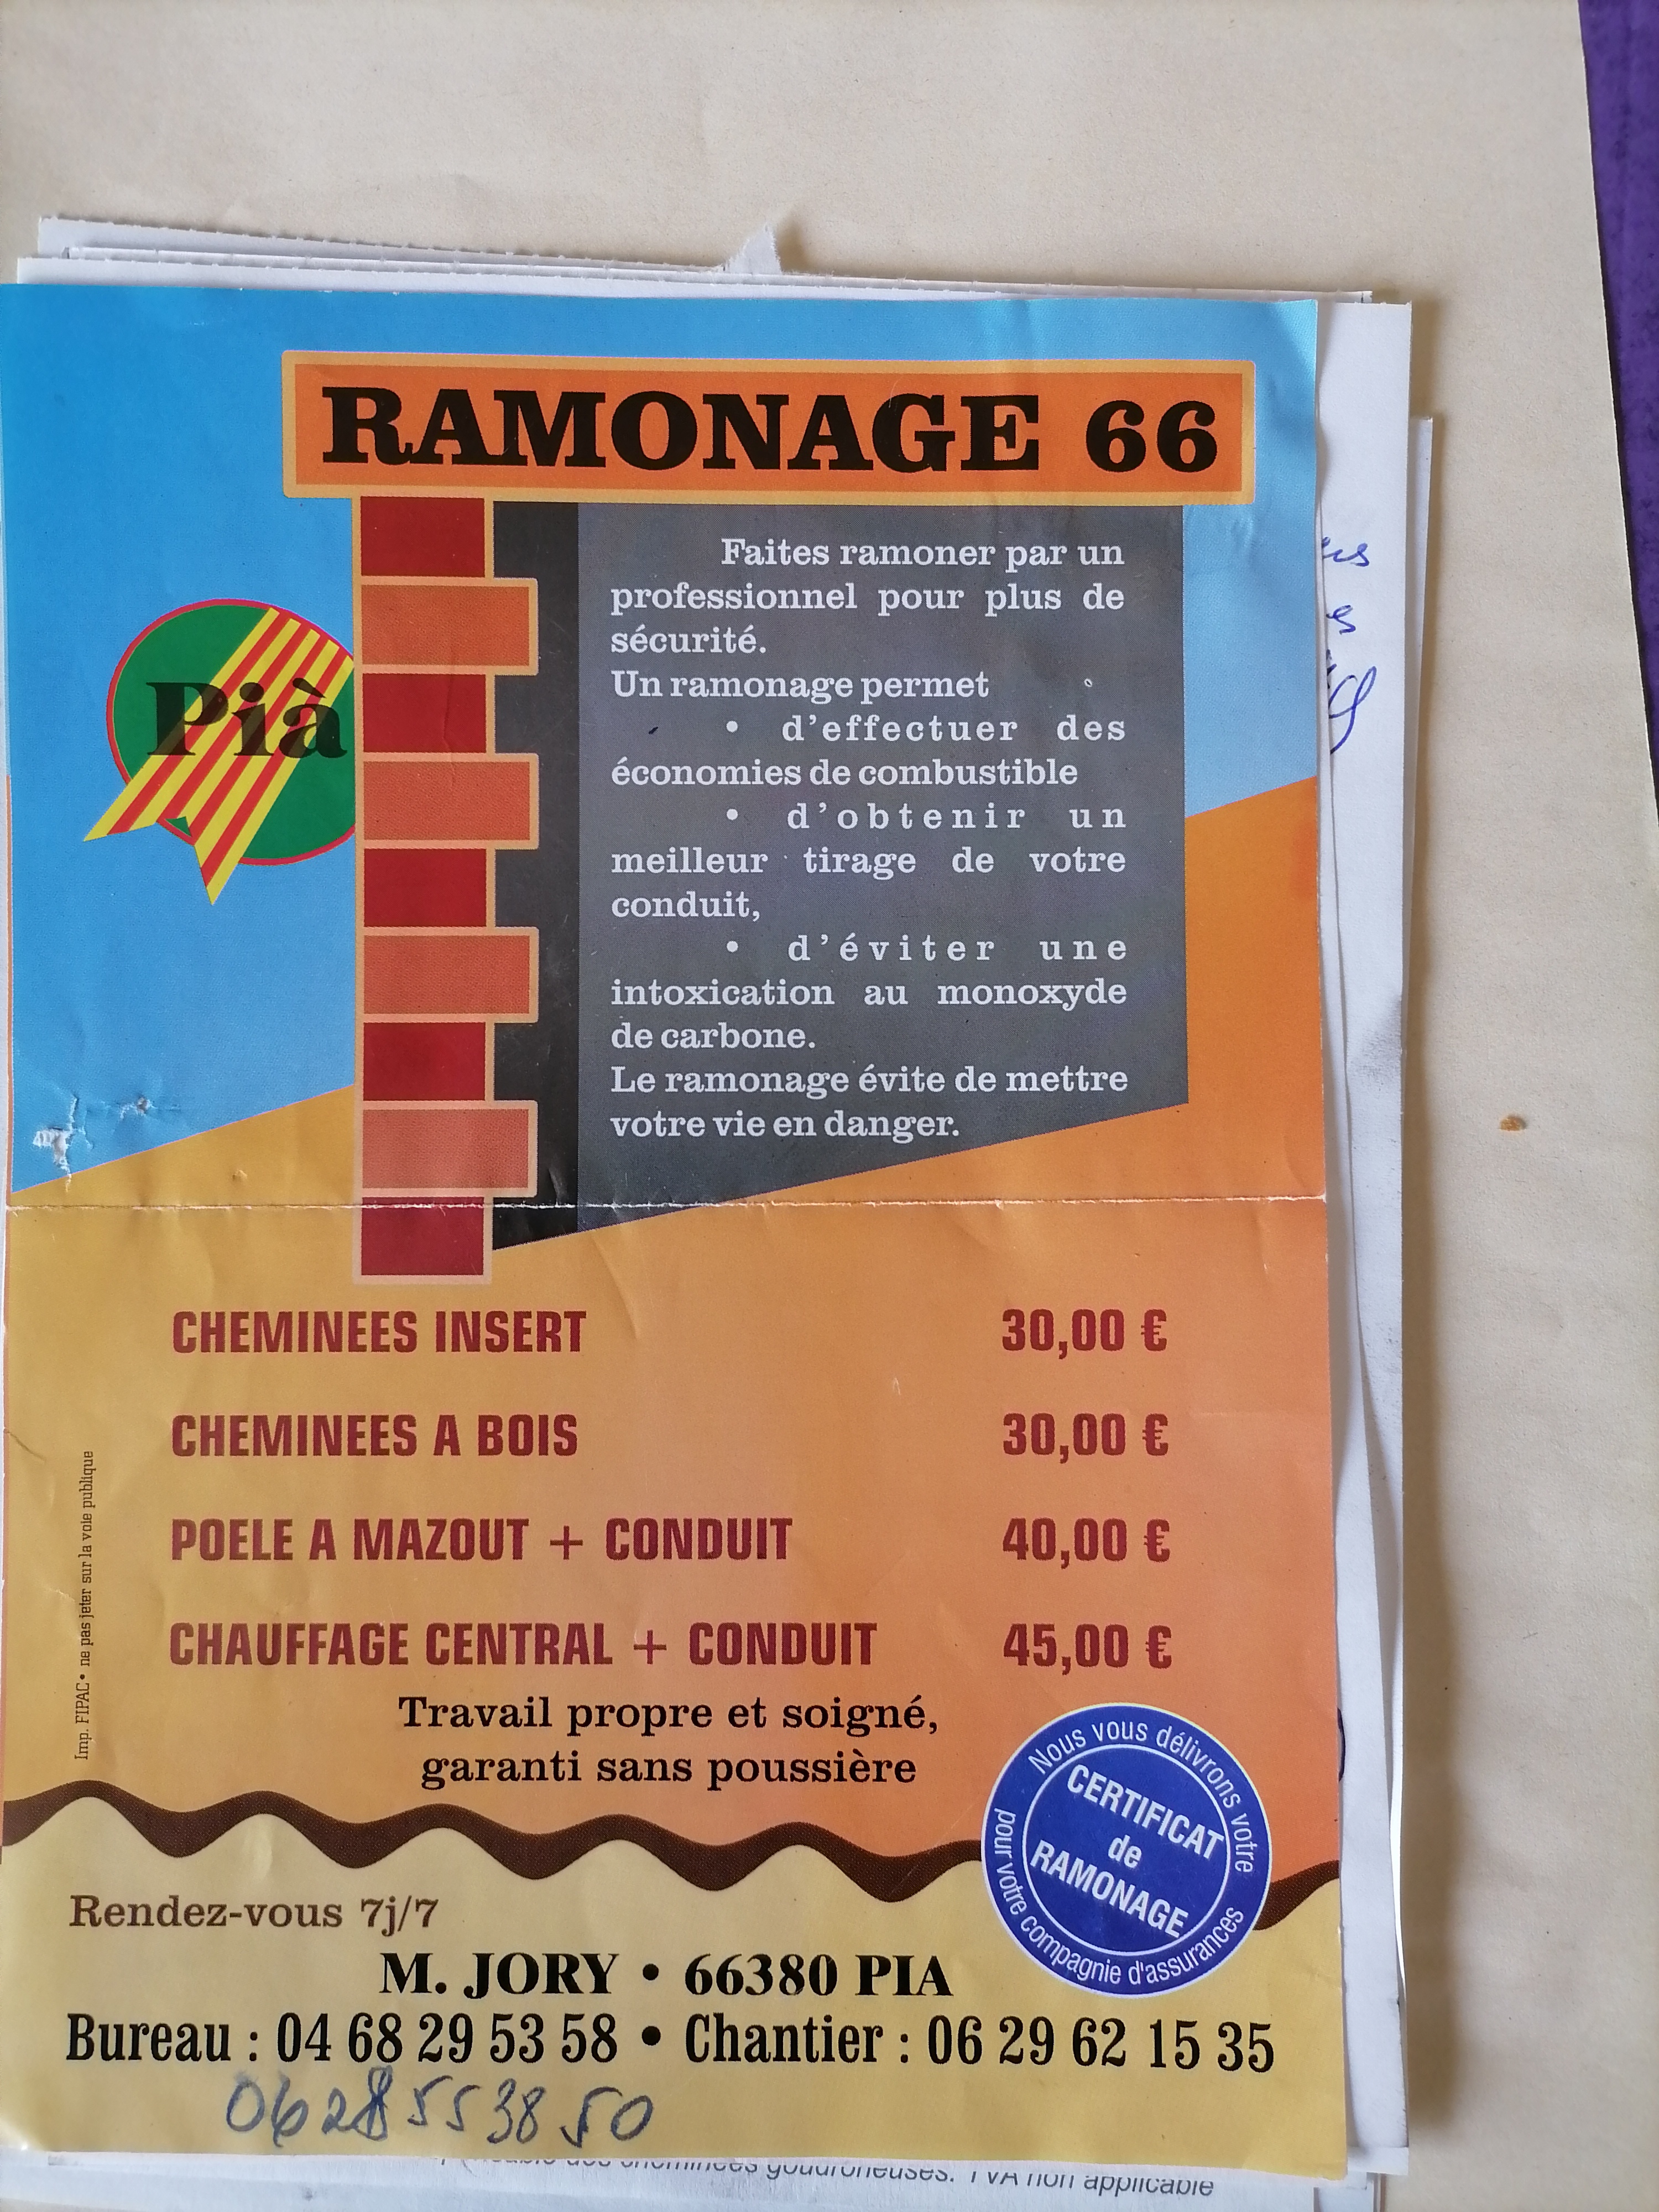 Ramonage 66